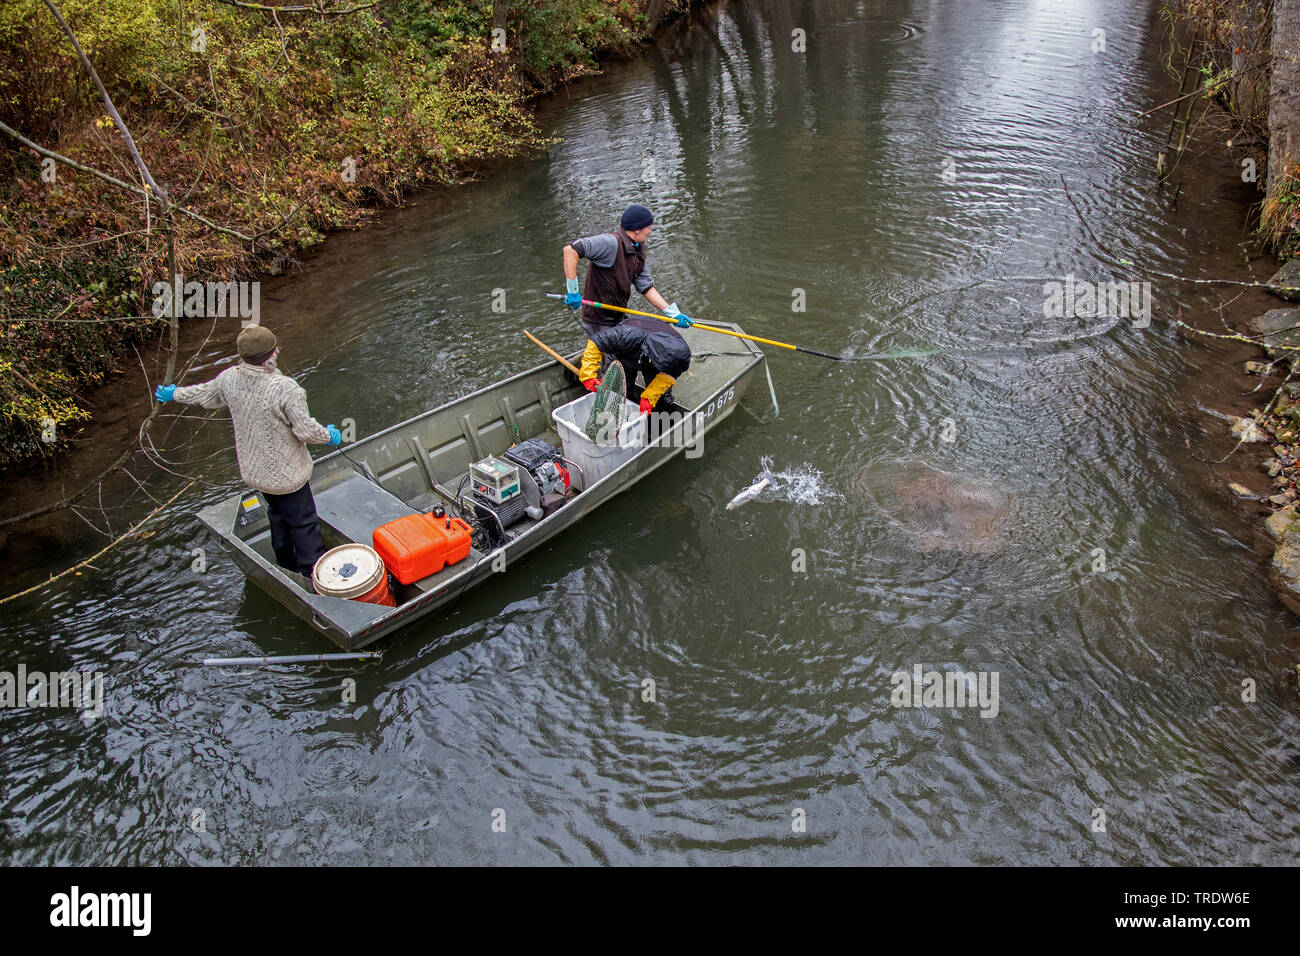 La trucha marrón, la trucha de arroyo, la trucha de río (Salmo trutta fario), la electro-pesca de producción de stock de peces autóctonos, Alemania, Baviera Foto de stock